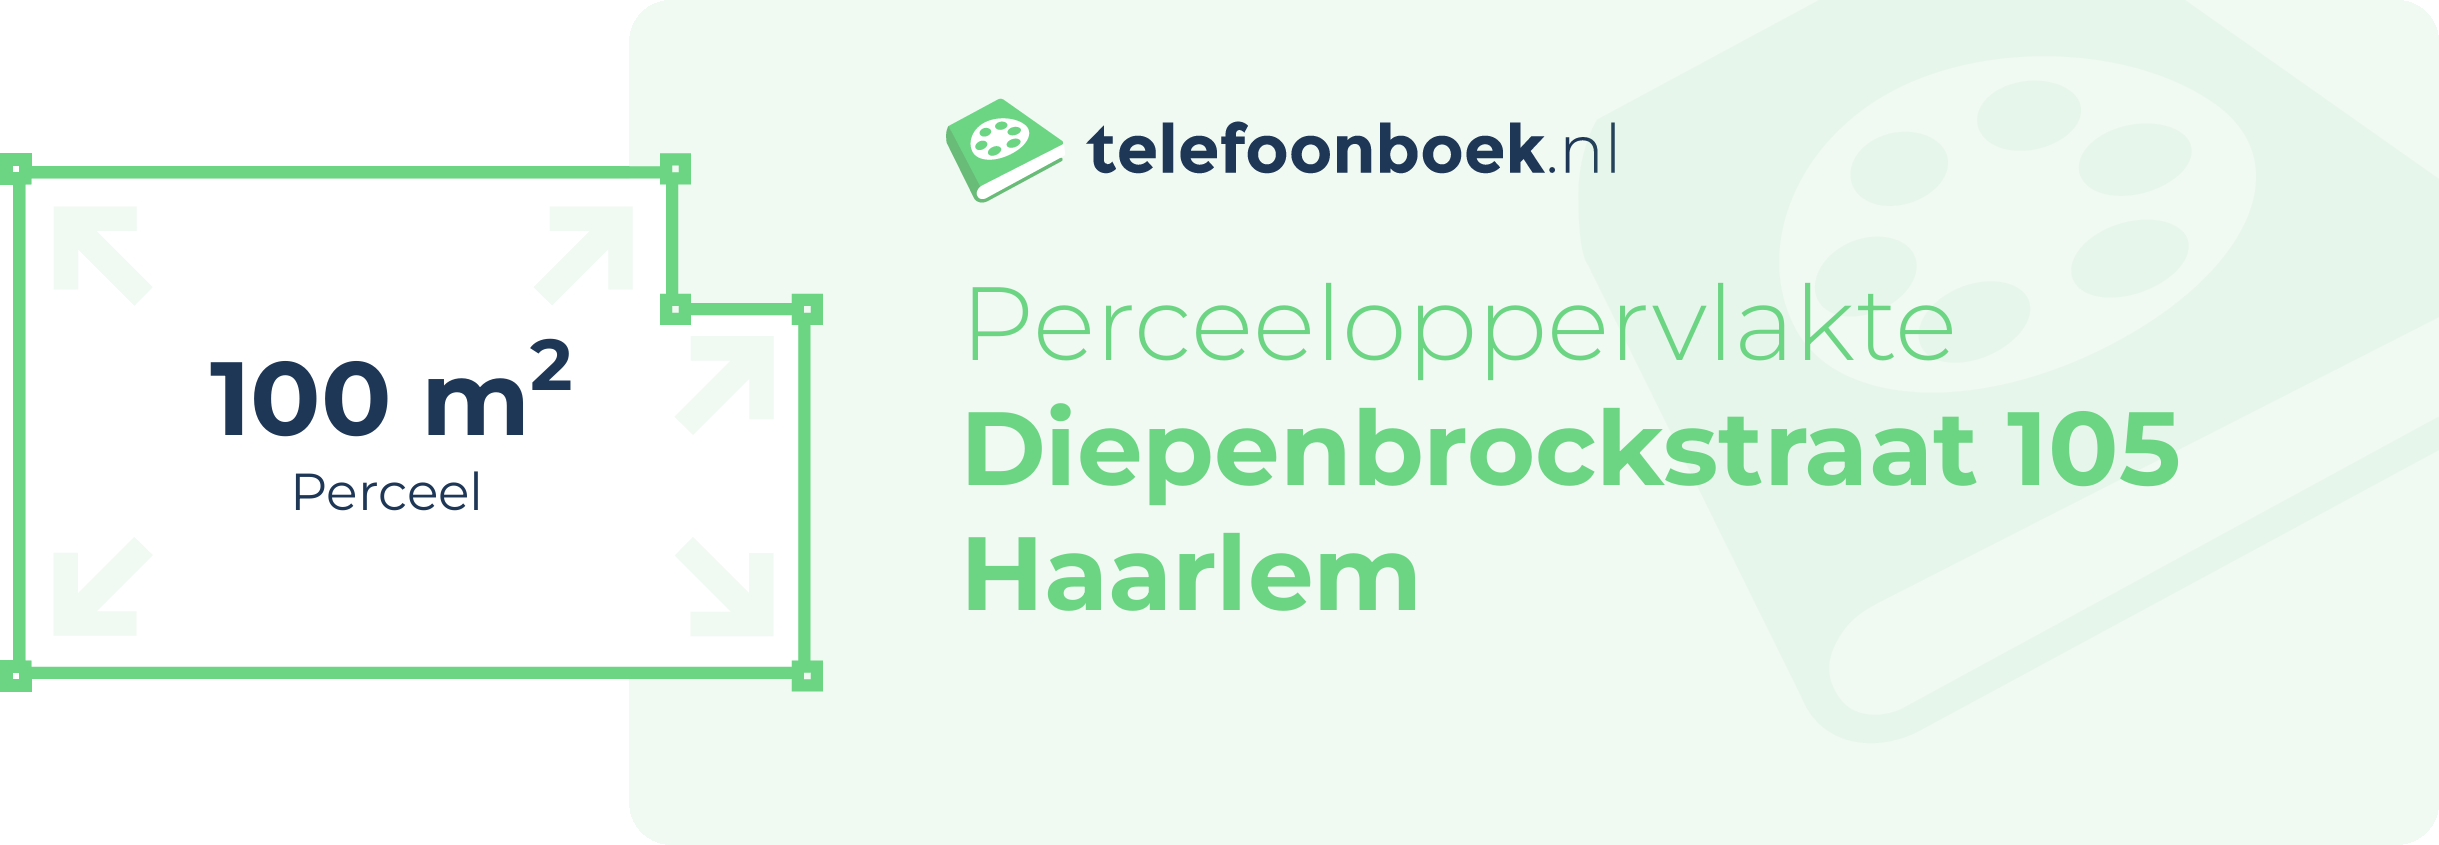 Perceeloppervlakte Diepenbrockstraat 105 Haarlem